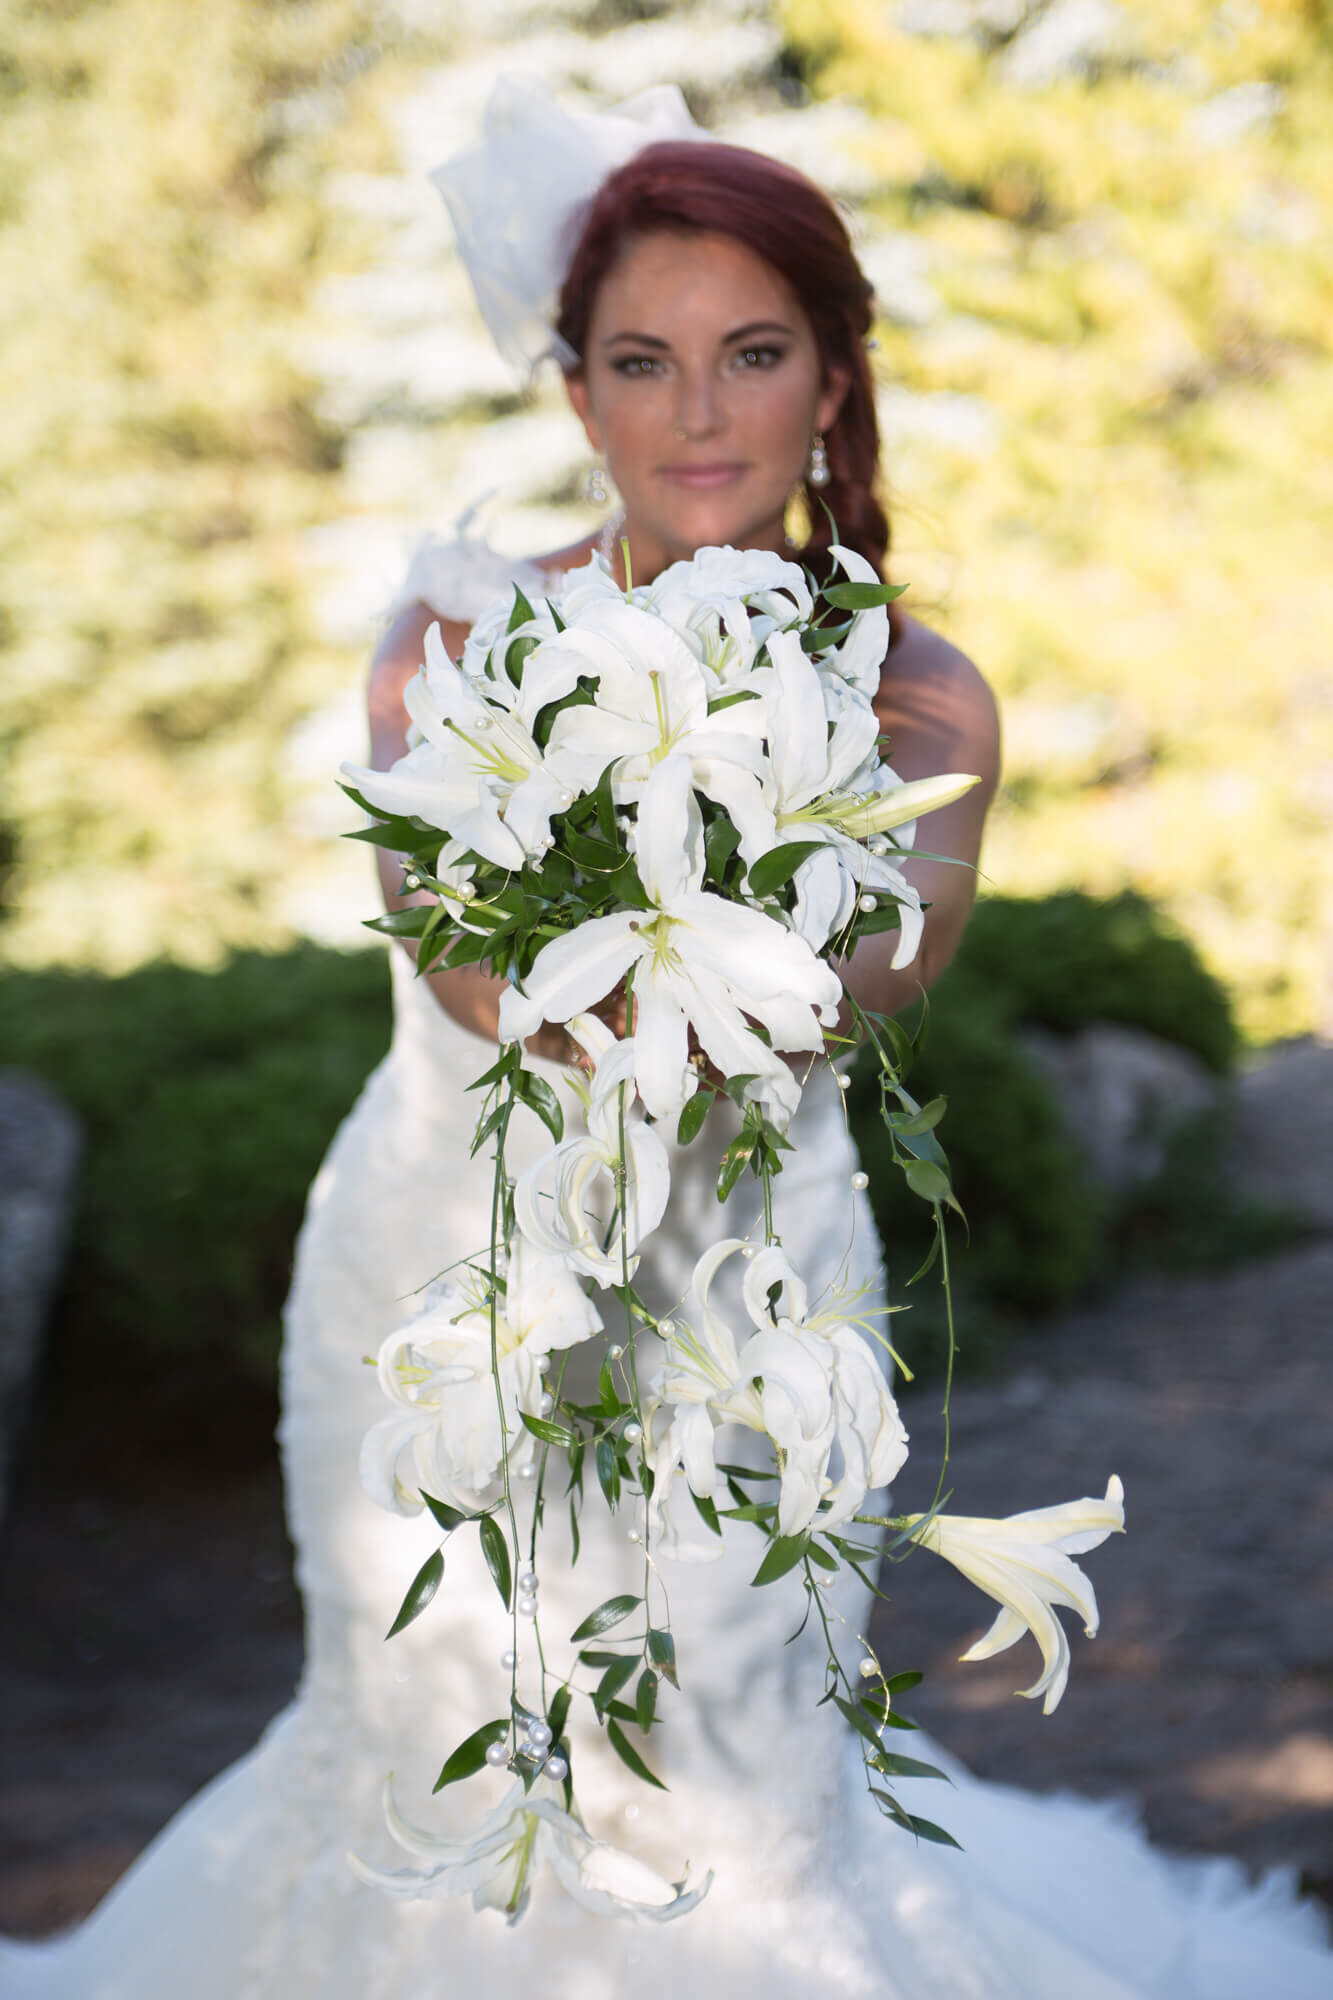 Bride holding our bouquet